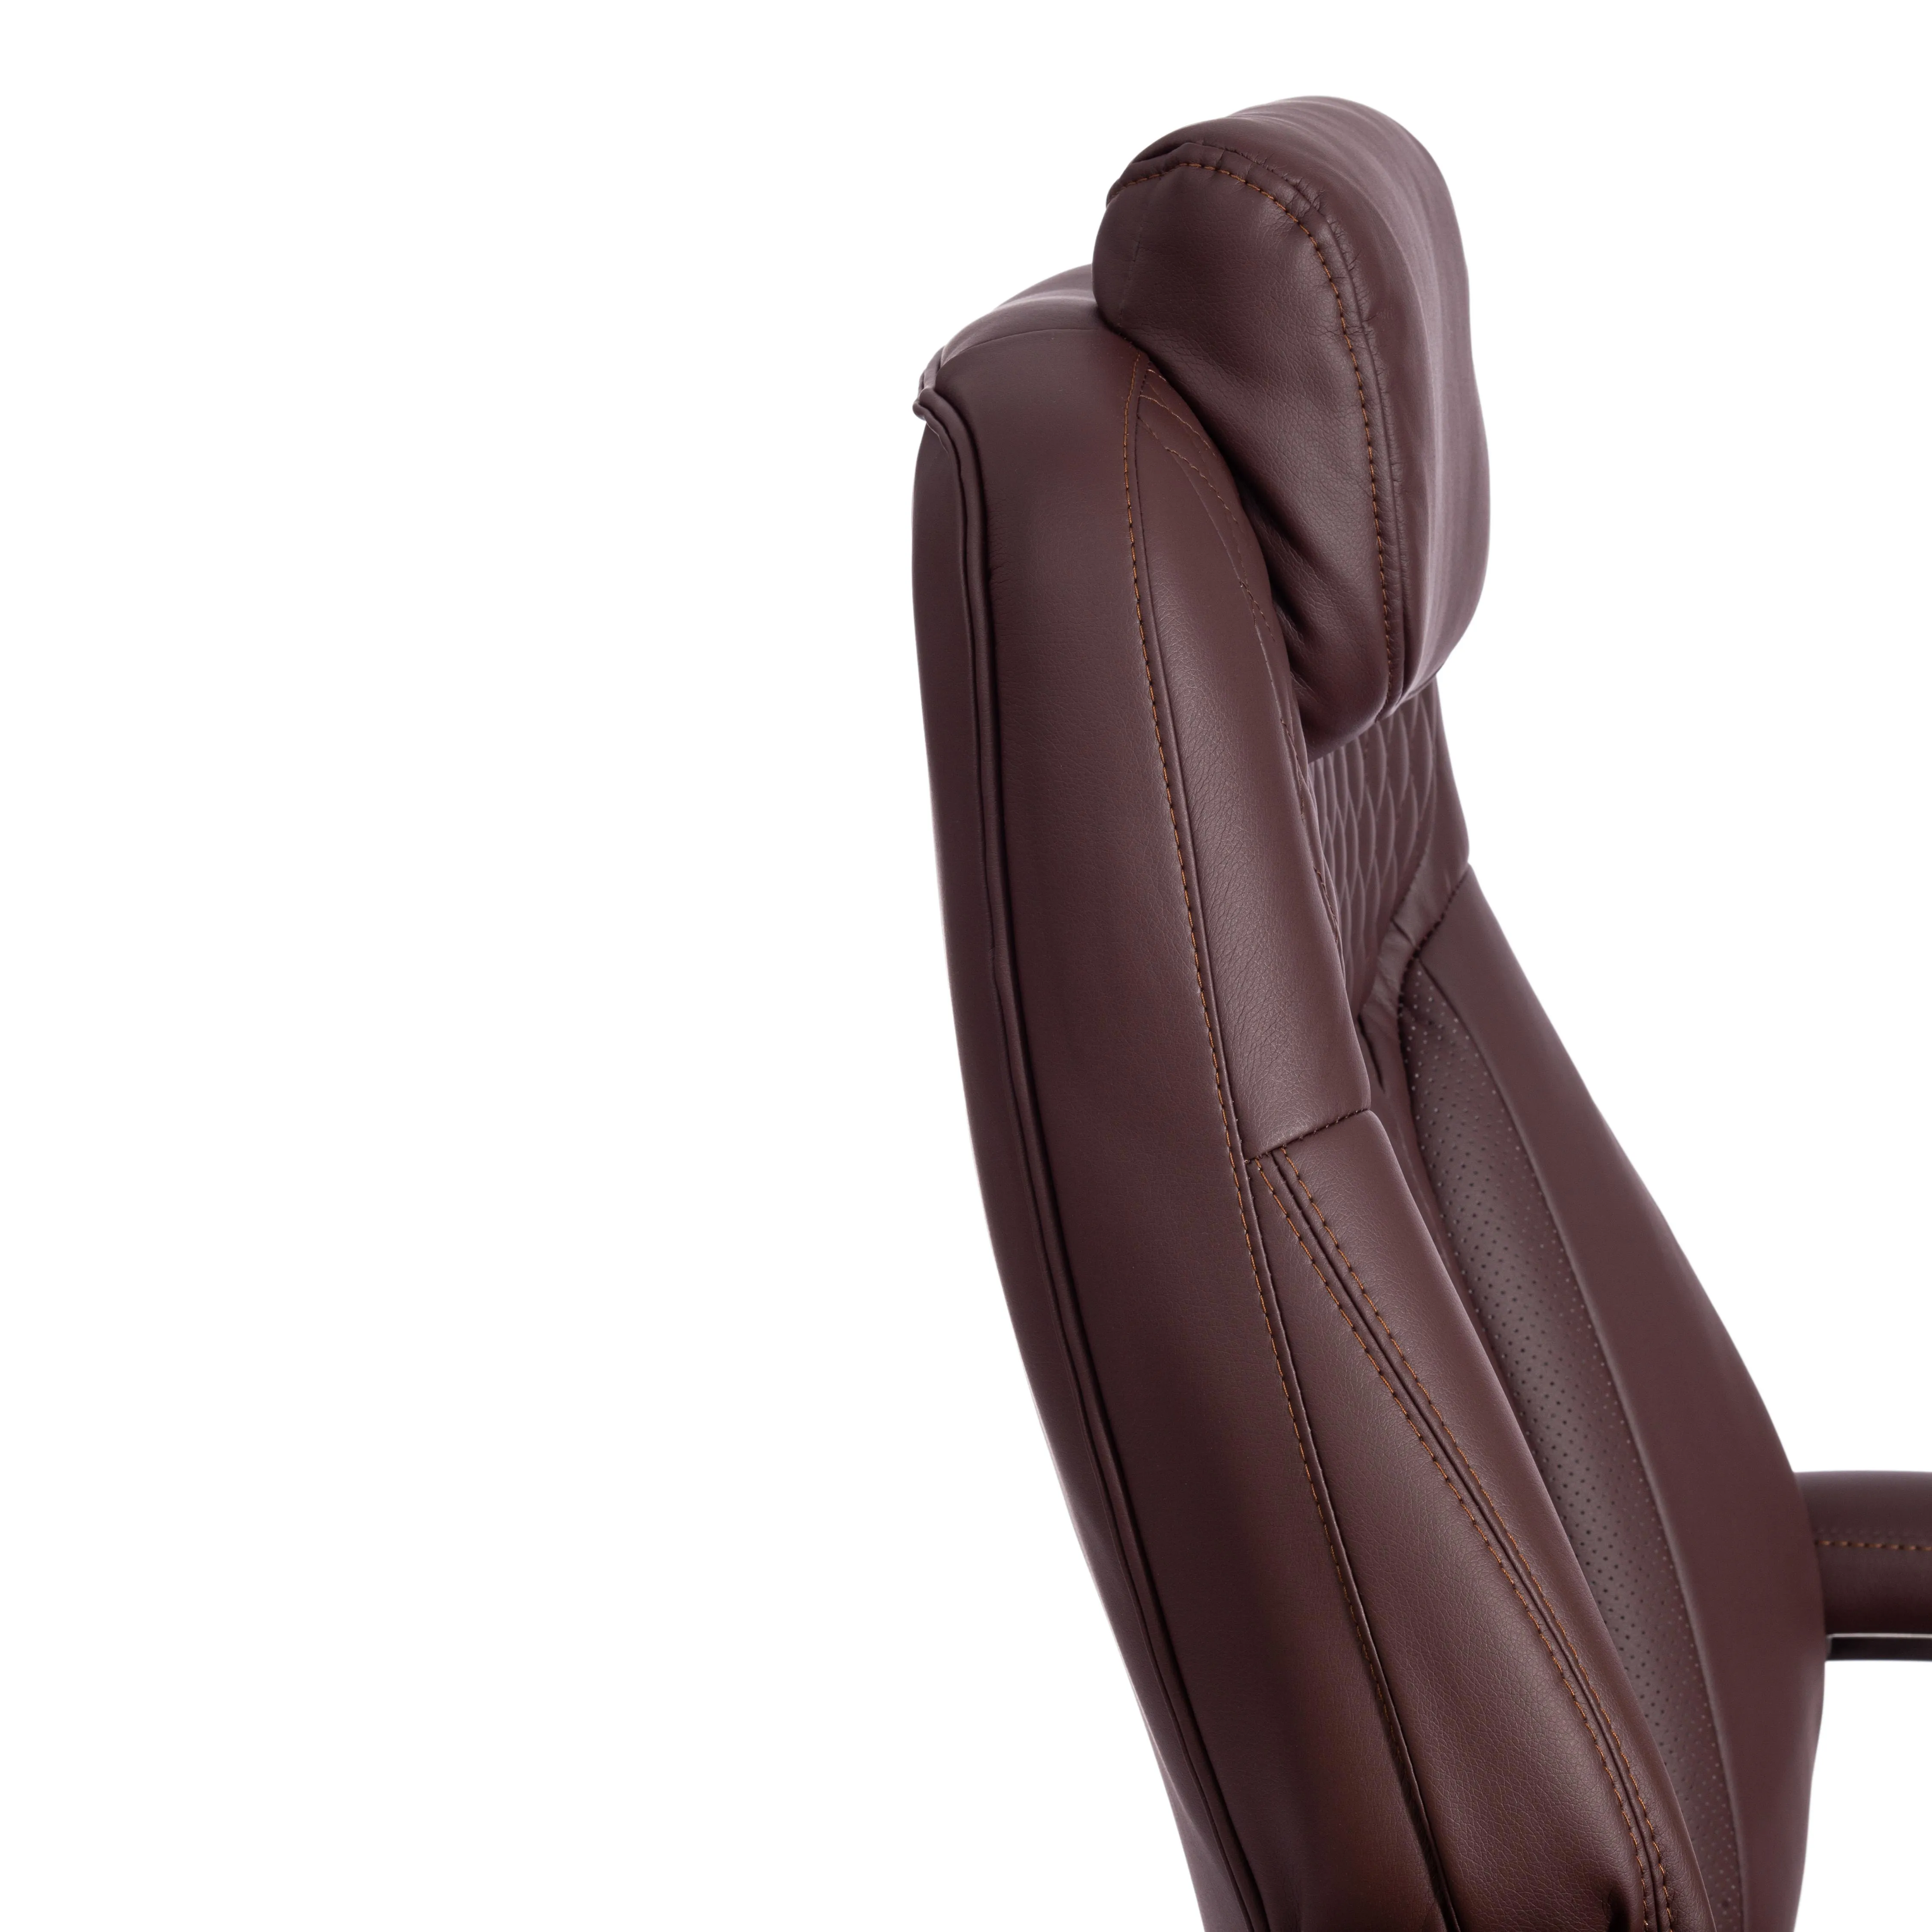 Кресло компьютерное для руководителя Trust (max) коричневый